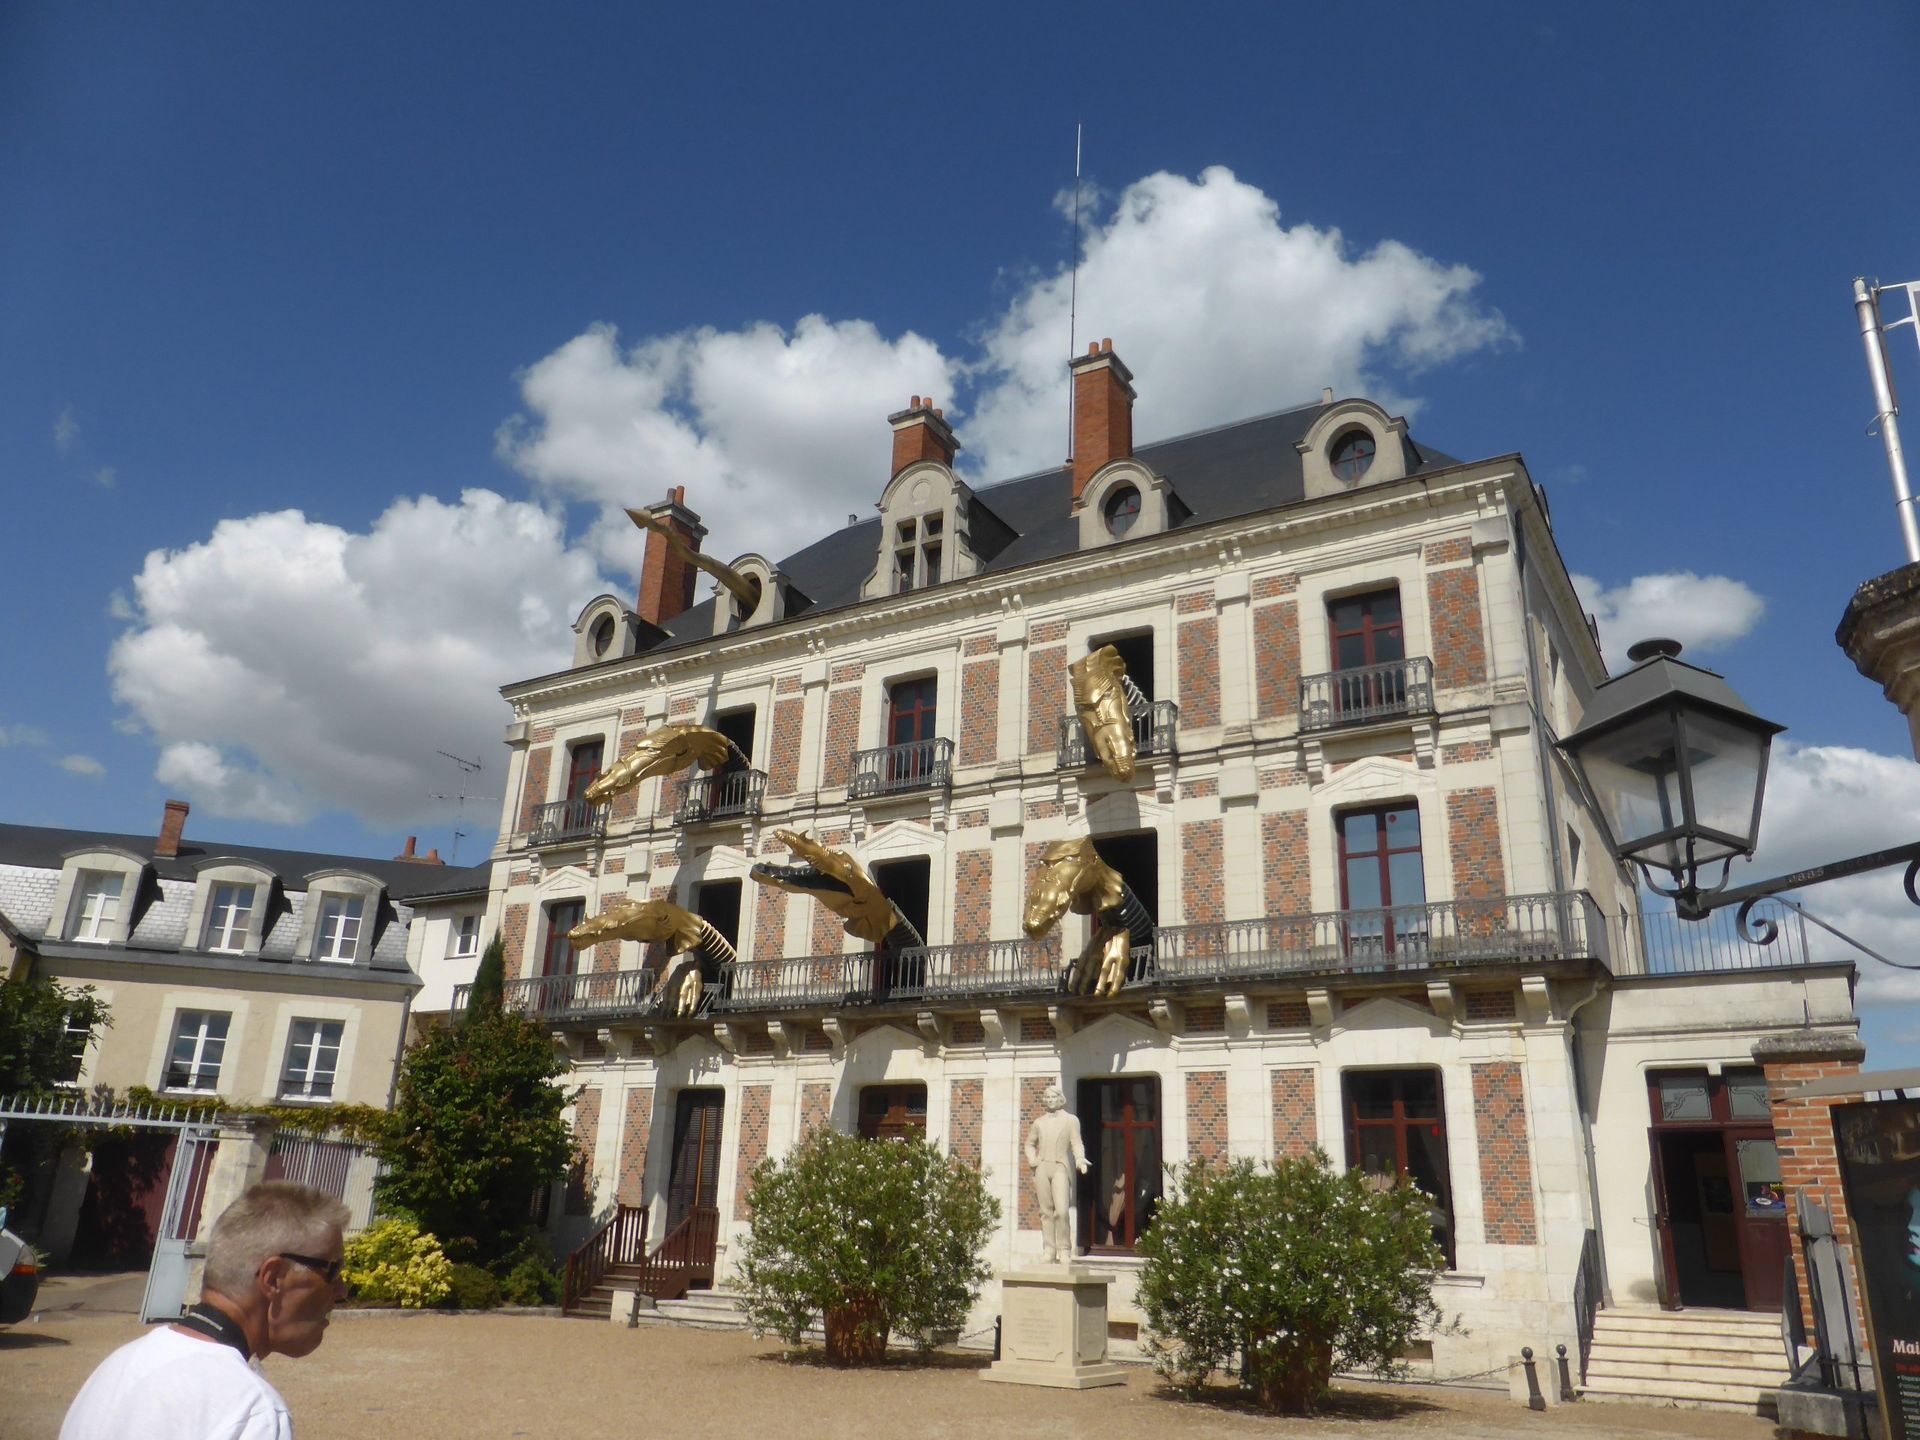 Maison du Magie in Blois